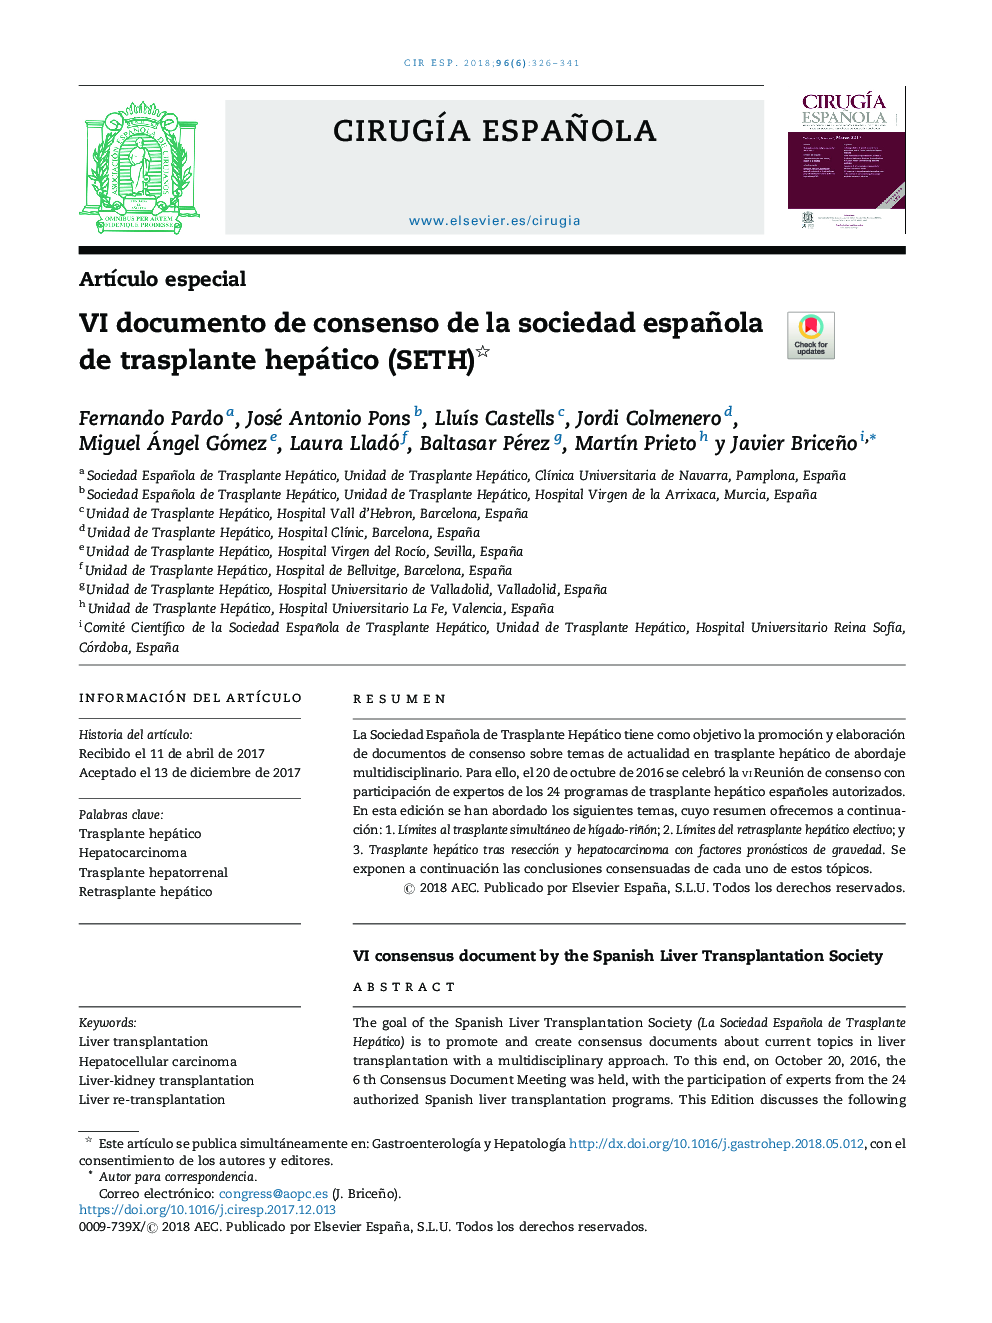 VI documento de consenso de la sociedad española de trasplante hepático (SETH)